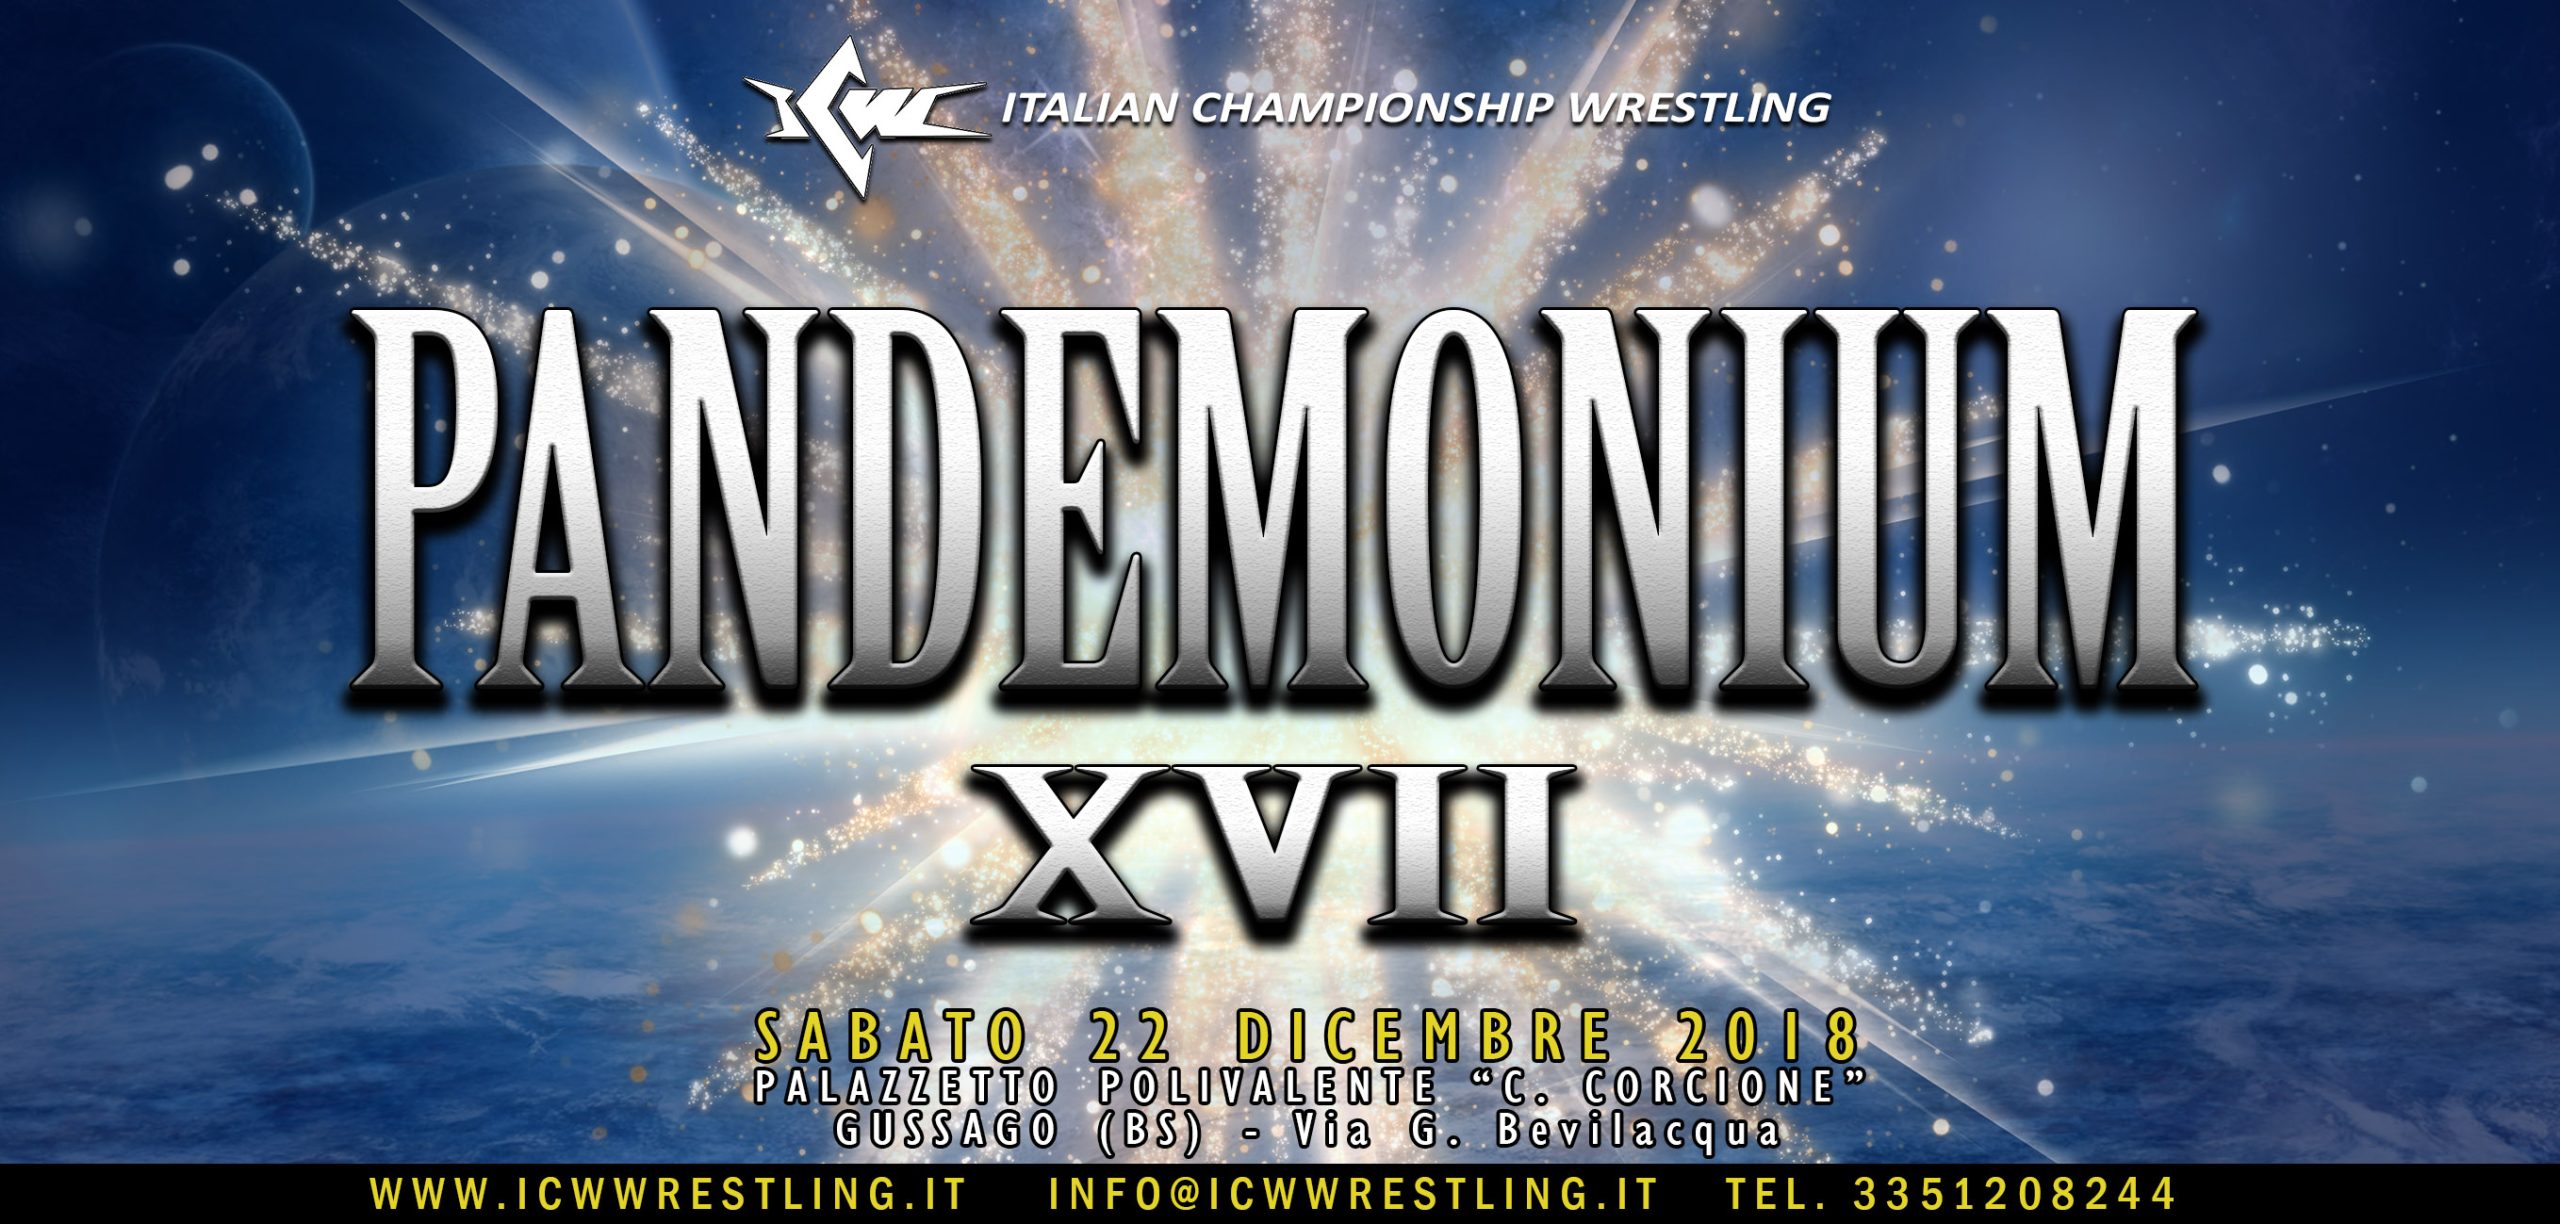 Il programma completo di ICW Pandemonium XVII: l’Evento di Wrestling dell’anno il 22 dicembre a Gussago